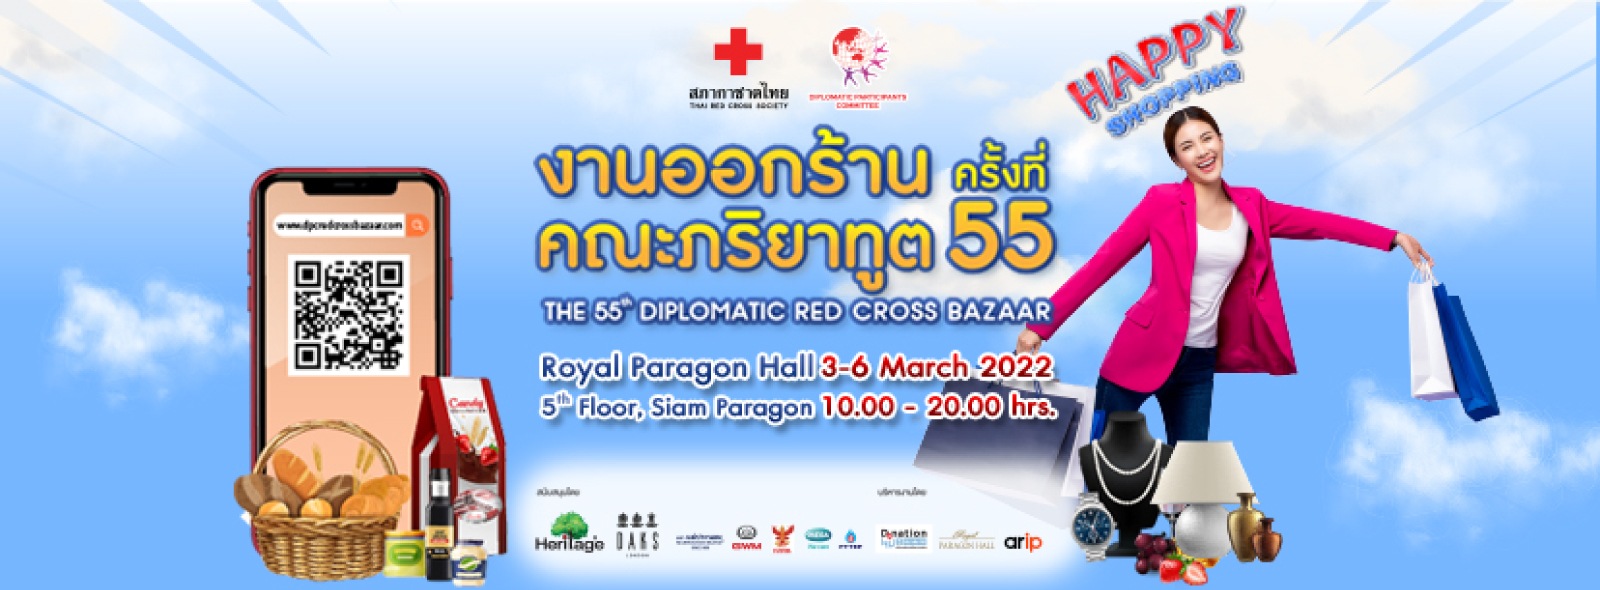 งานออกร้านคณะภริยาทูต ครั้งที่ 55 (Diplomatic Red Cross Bazaar)